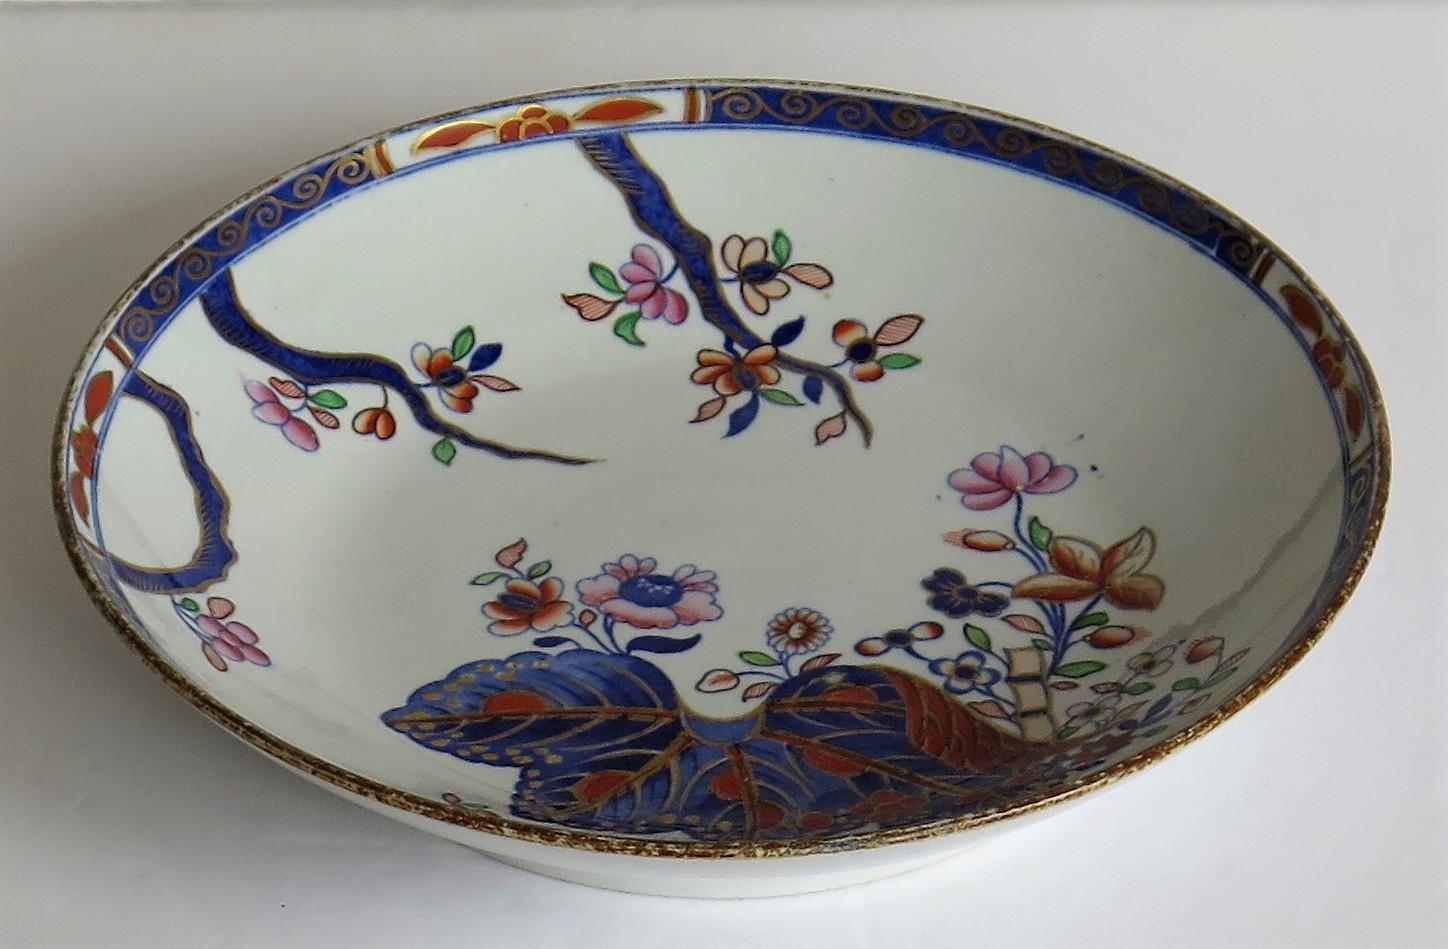 George III Georgian Spode Deep Plate or Dish Porcelain Tobacco Leaf Pattern 2061 circa 1805